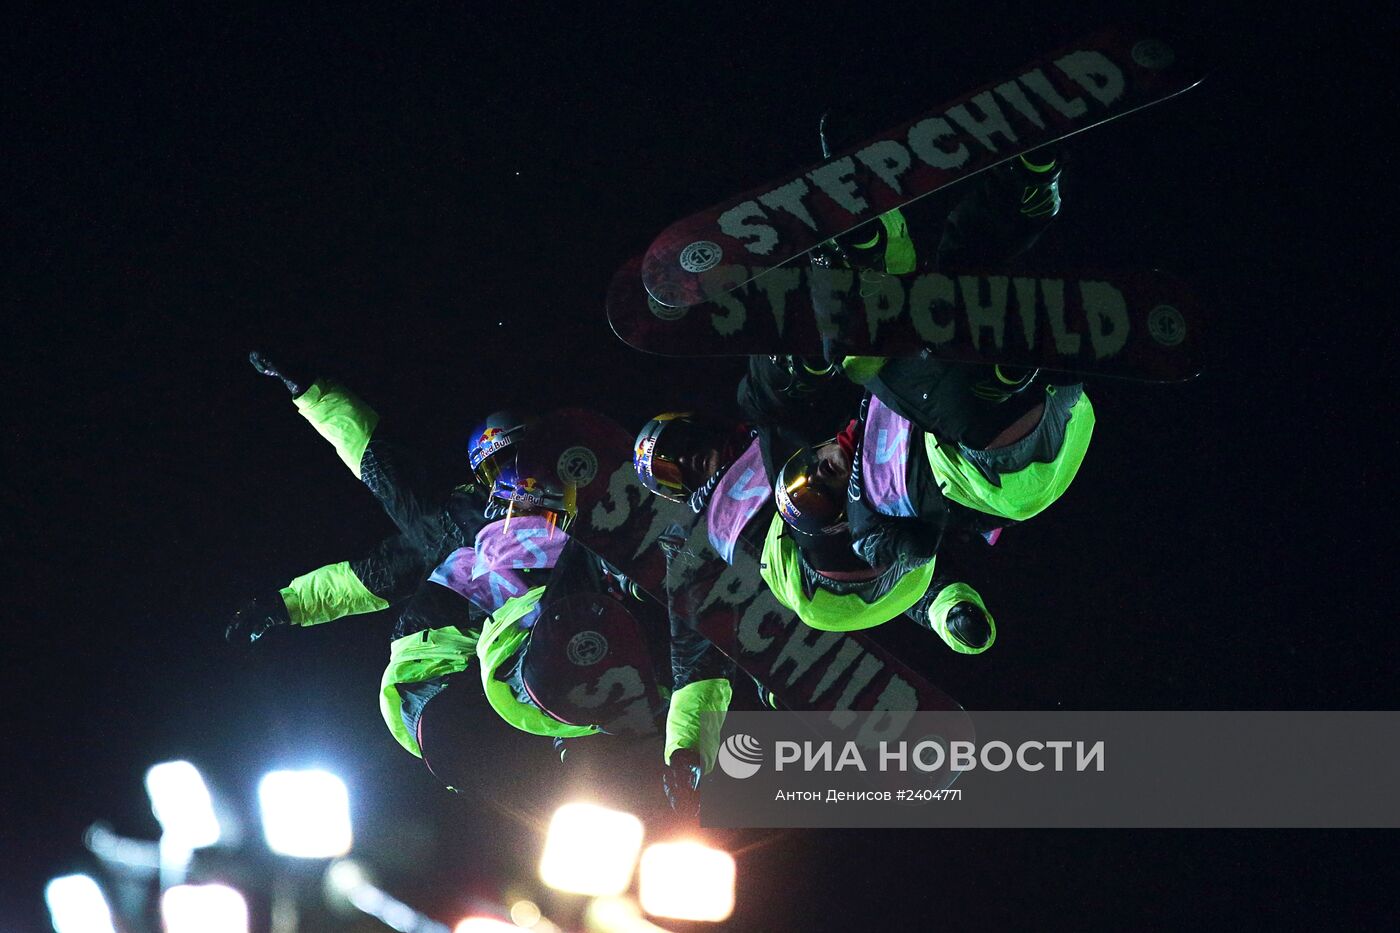 Фестиваль экстремальных видов спорта Grand Prix de Russie